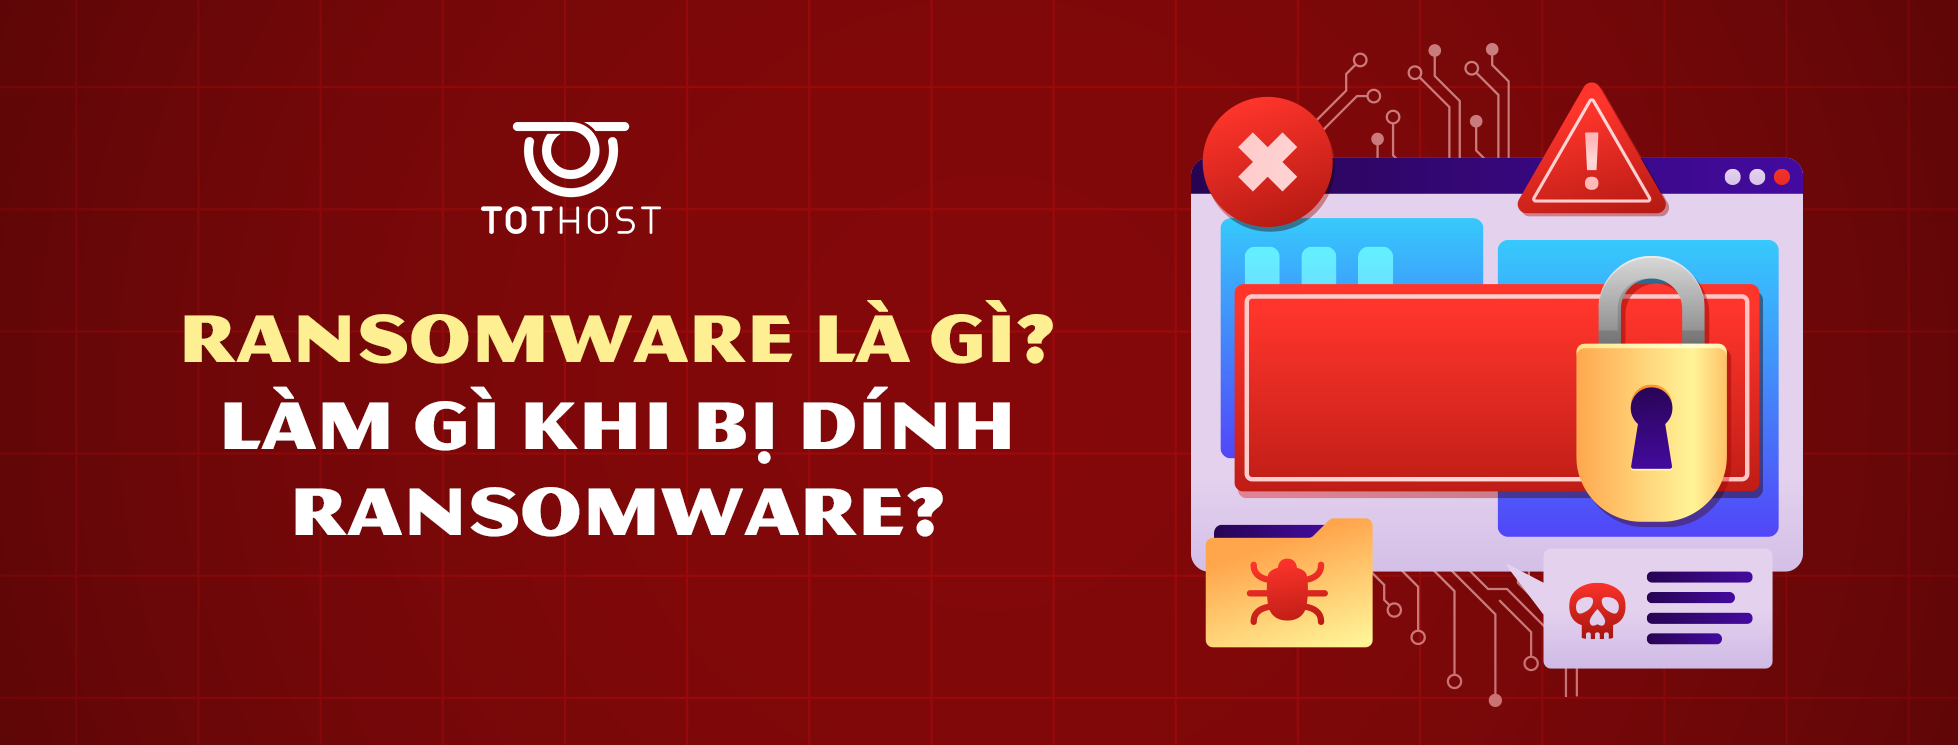 Ransomware là gì? Dính ransomware phải làm gì?